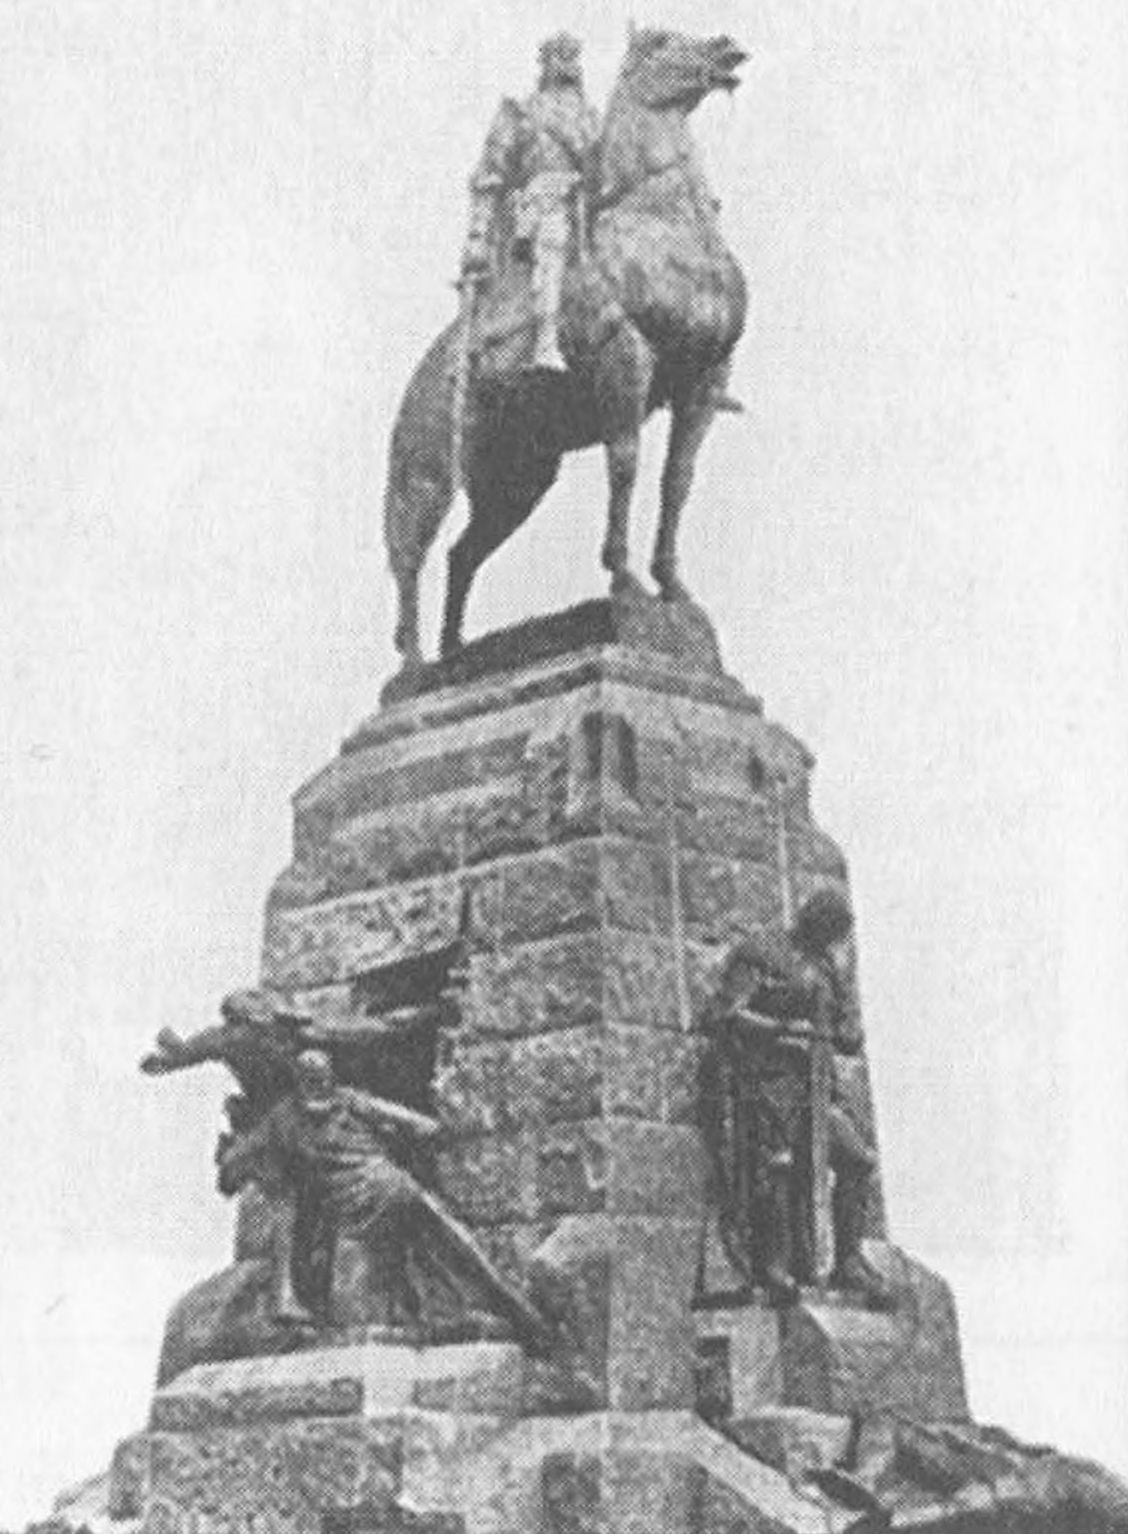 Ил. 41. Антоний Вивульский. Памятник королю Владиславу II Ягелло в Кракове (1910)